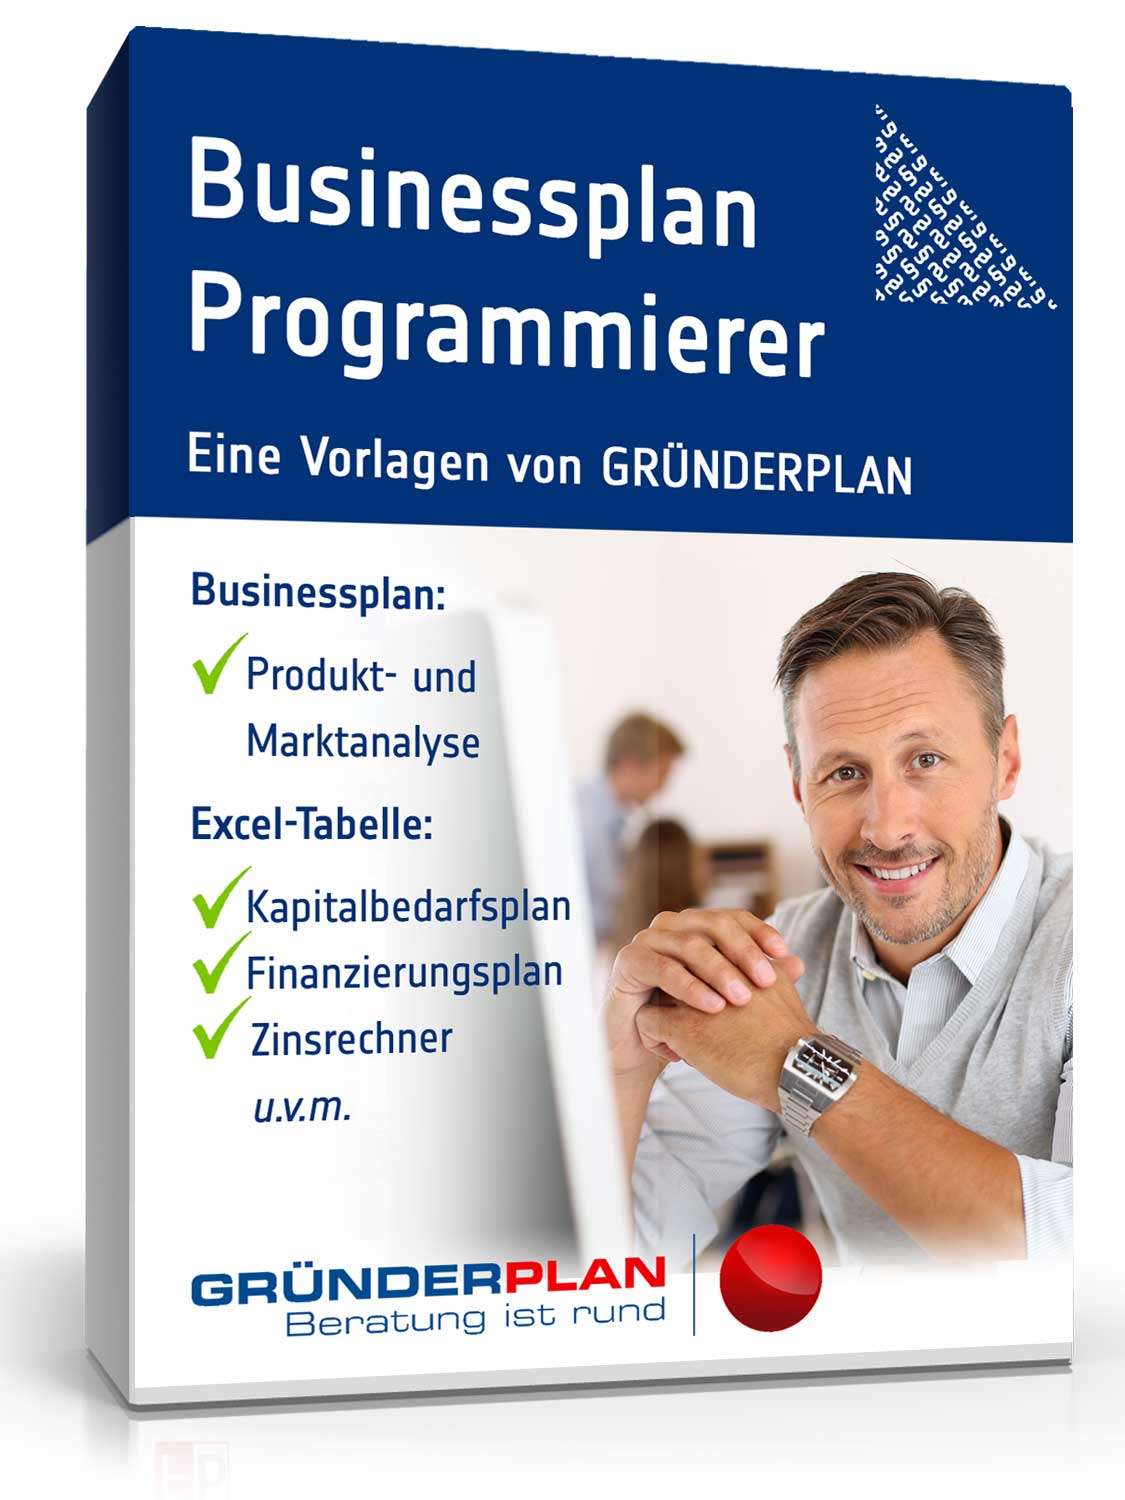 Hauptbild des Produkts: Businessplan Programmierer/Softwarehaus von Gründerplan